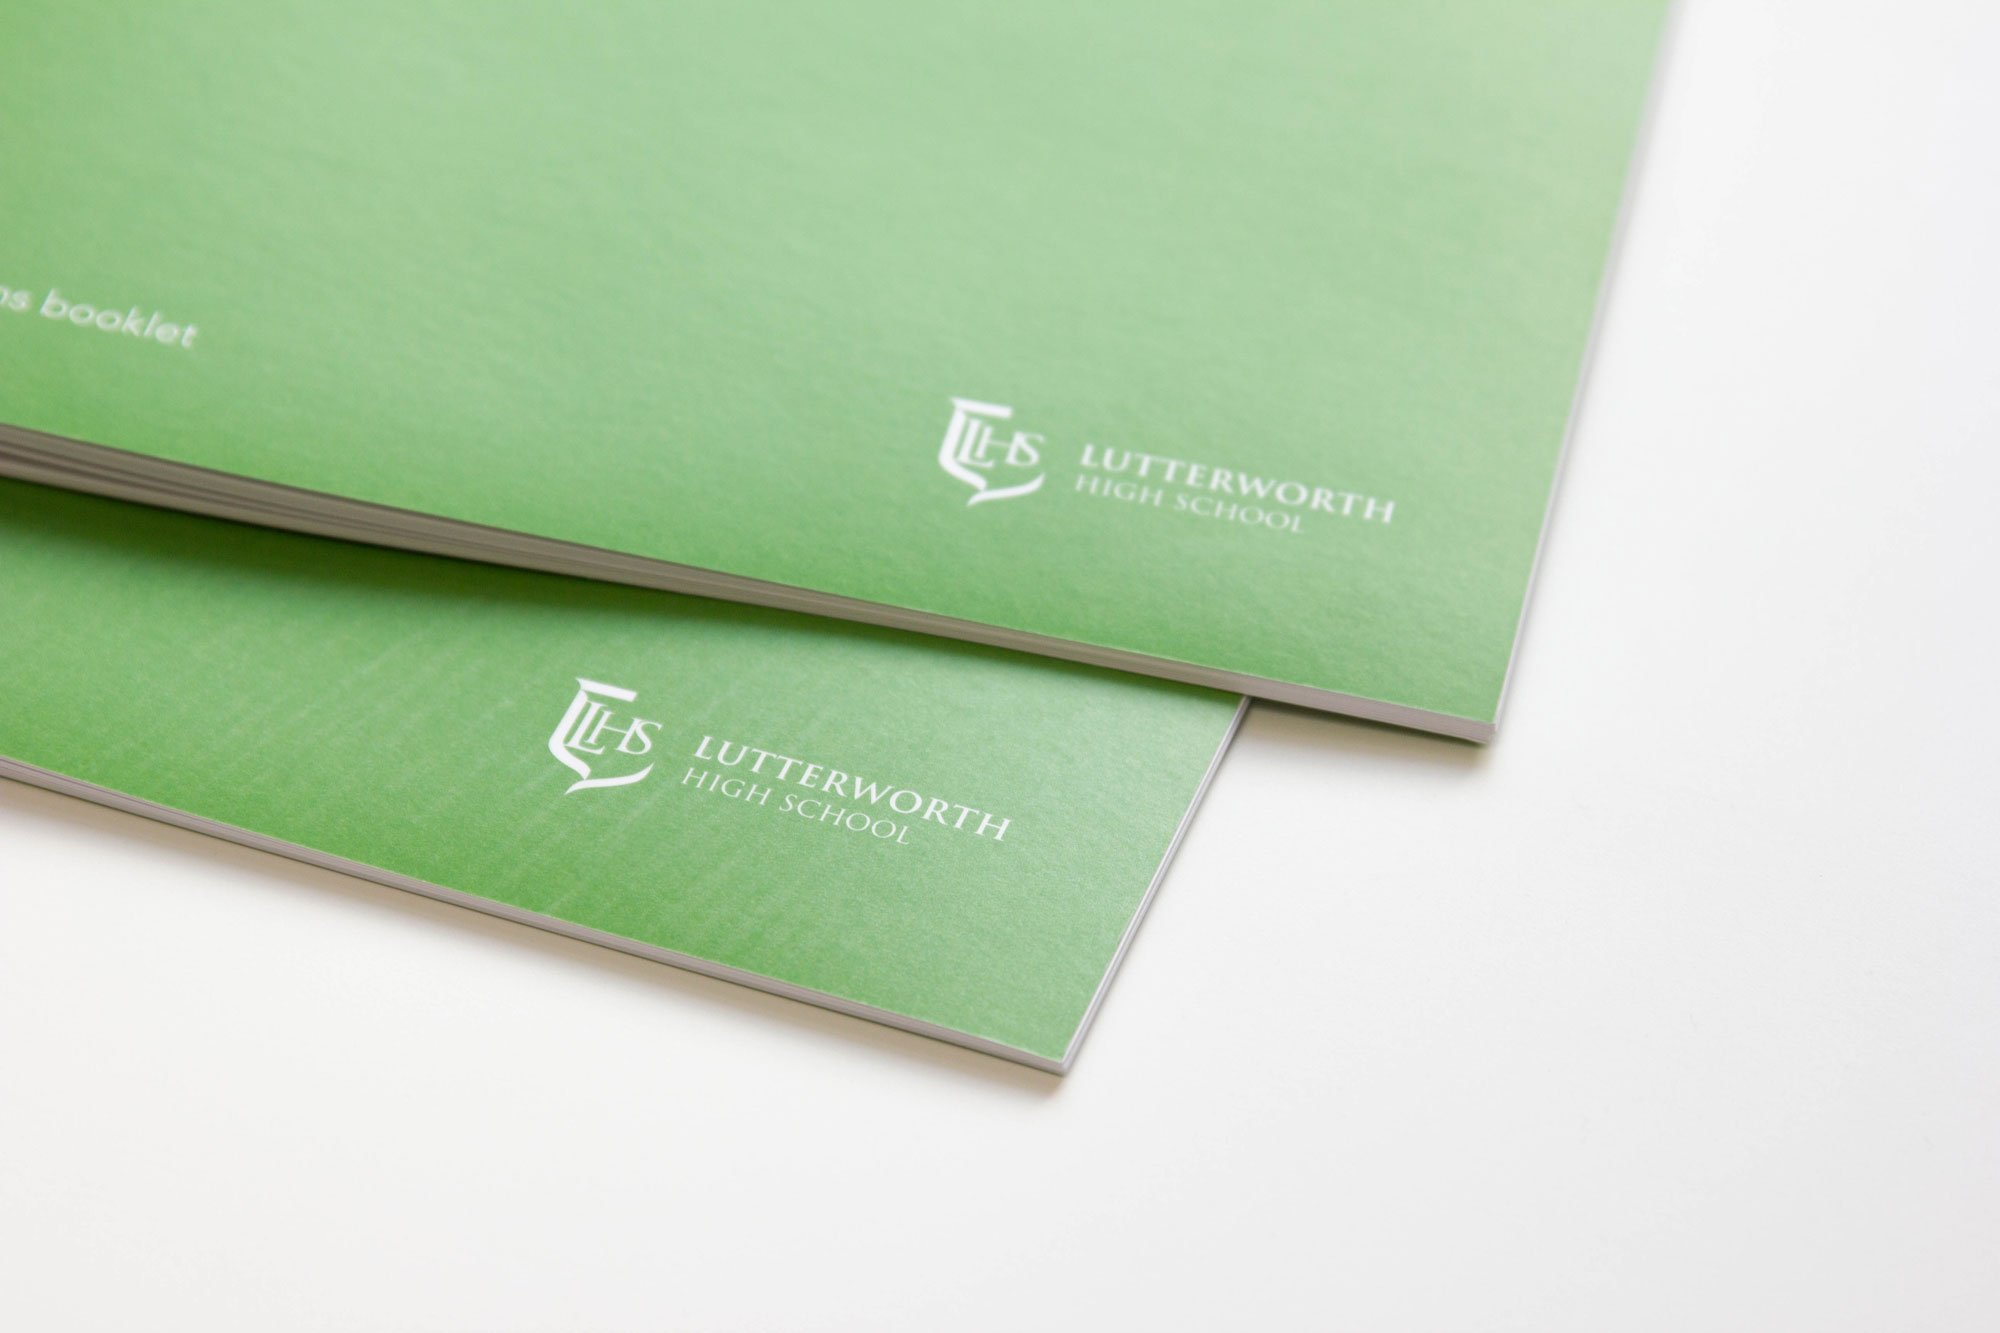 Lutterworth-info-booklet-02.jpg